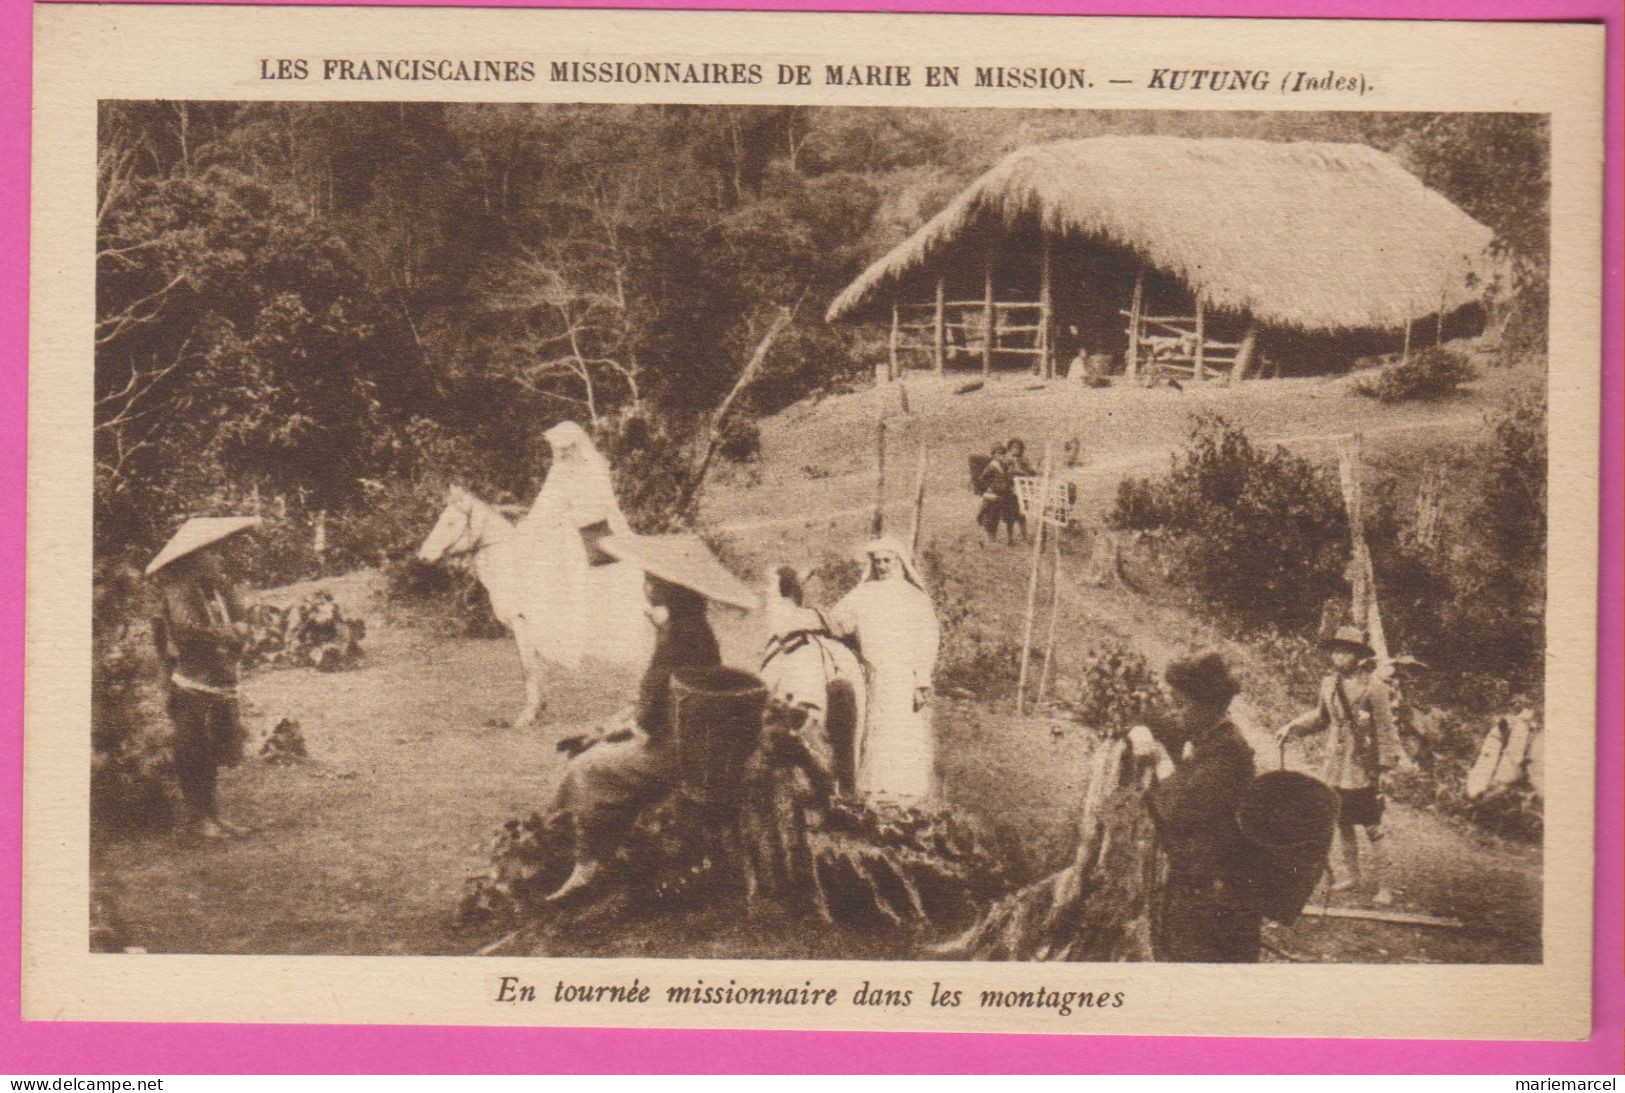 LES FRANCISCAINES MISSIONNAIRES DE MARIE EN MISSION - Lot de 17 Cartes - détail dans la description